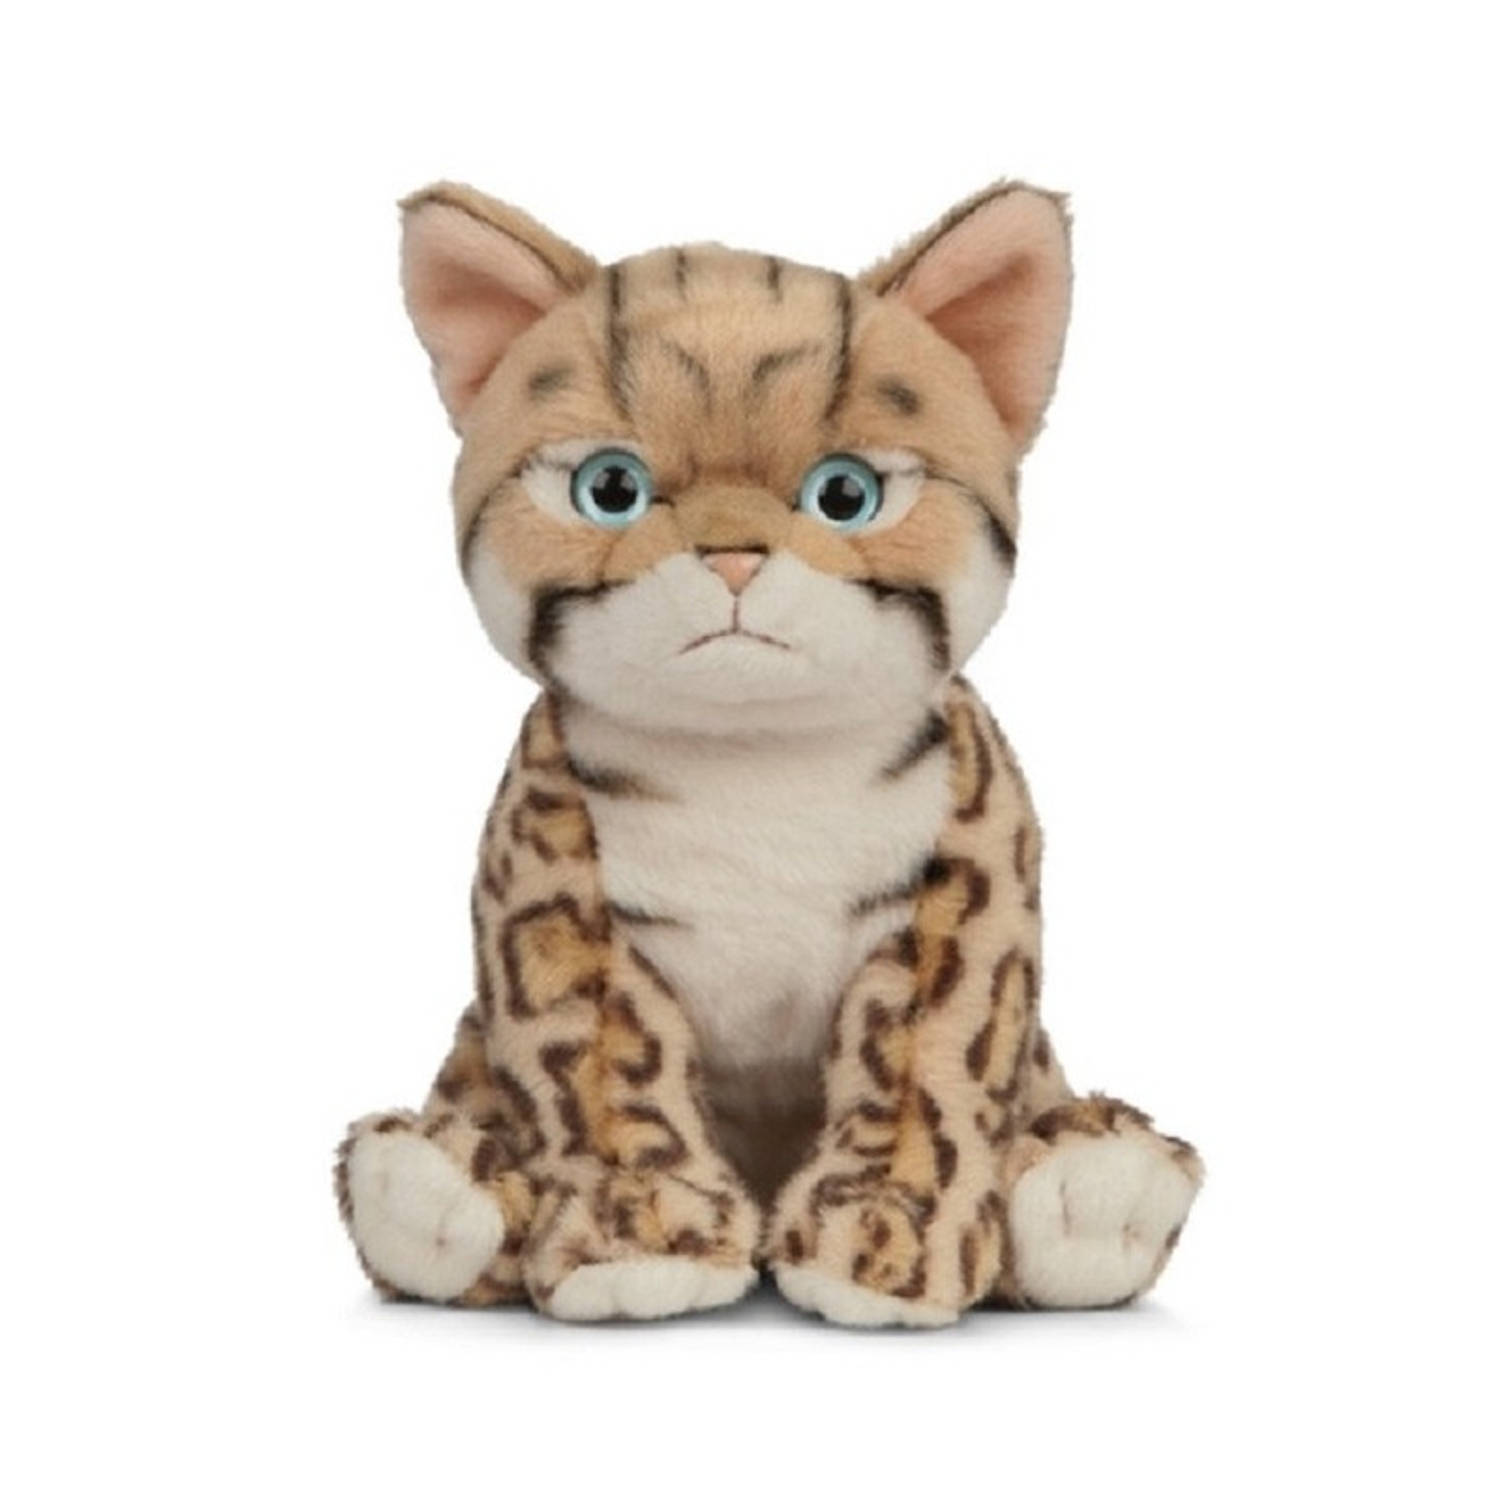 Pluche Bengaalse kat-poes knuffel 16 cm Katten-poezen artikelen Huisdieren knuffels Speelgoed voor k